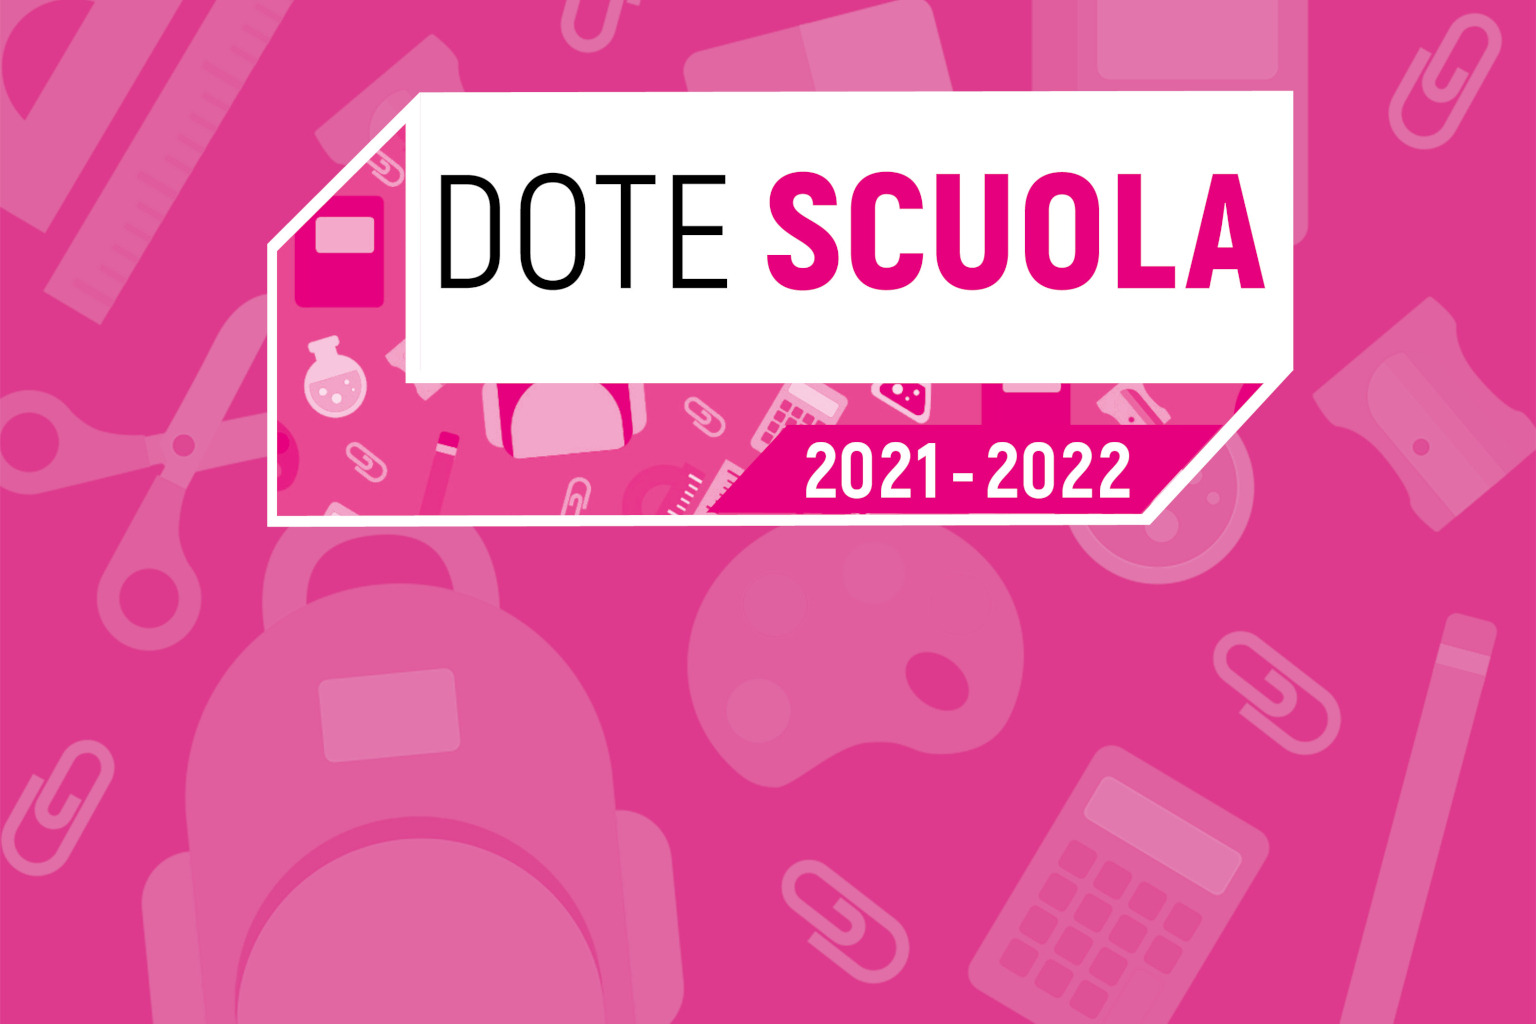 DOTE SCUOLA - A.S. 2021-2022